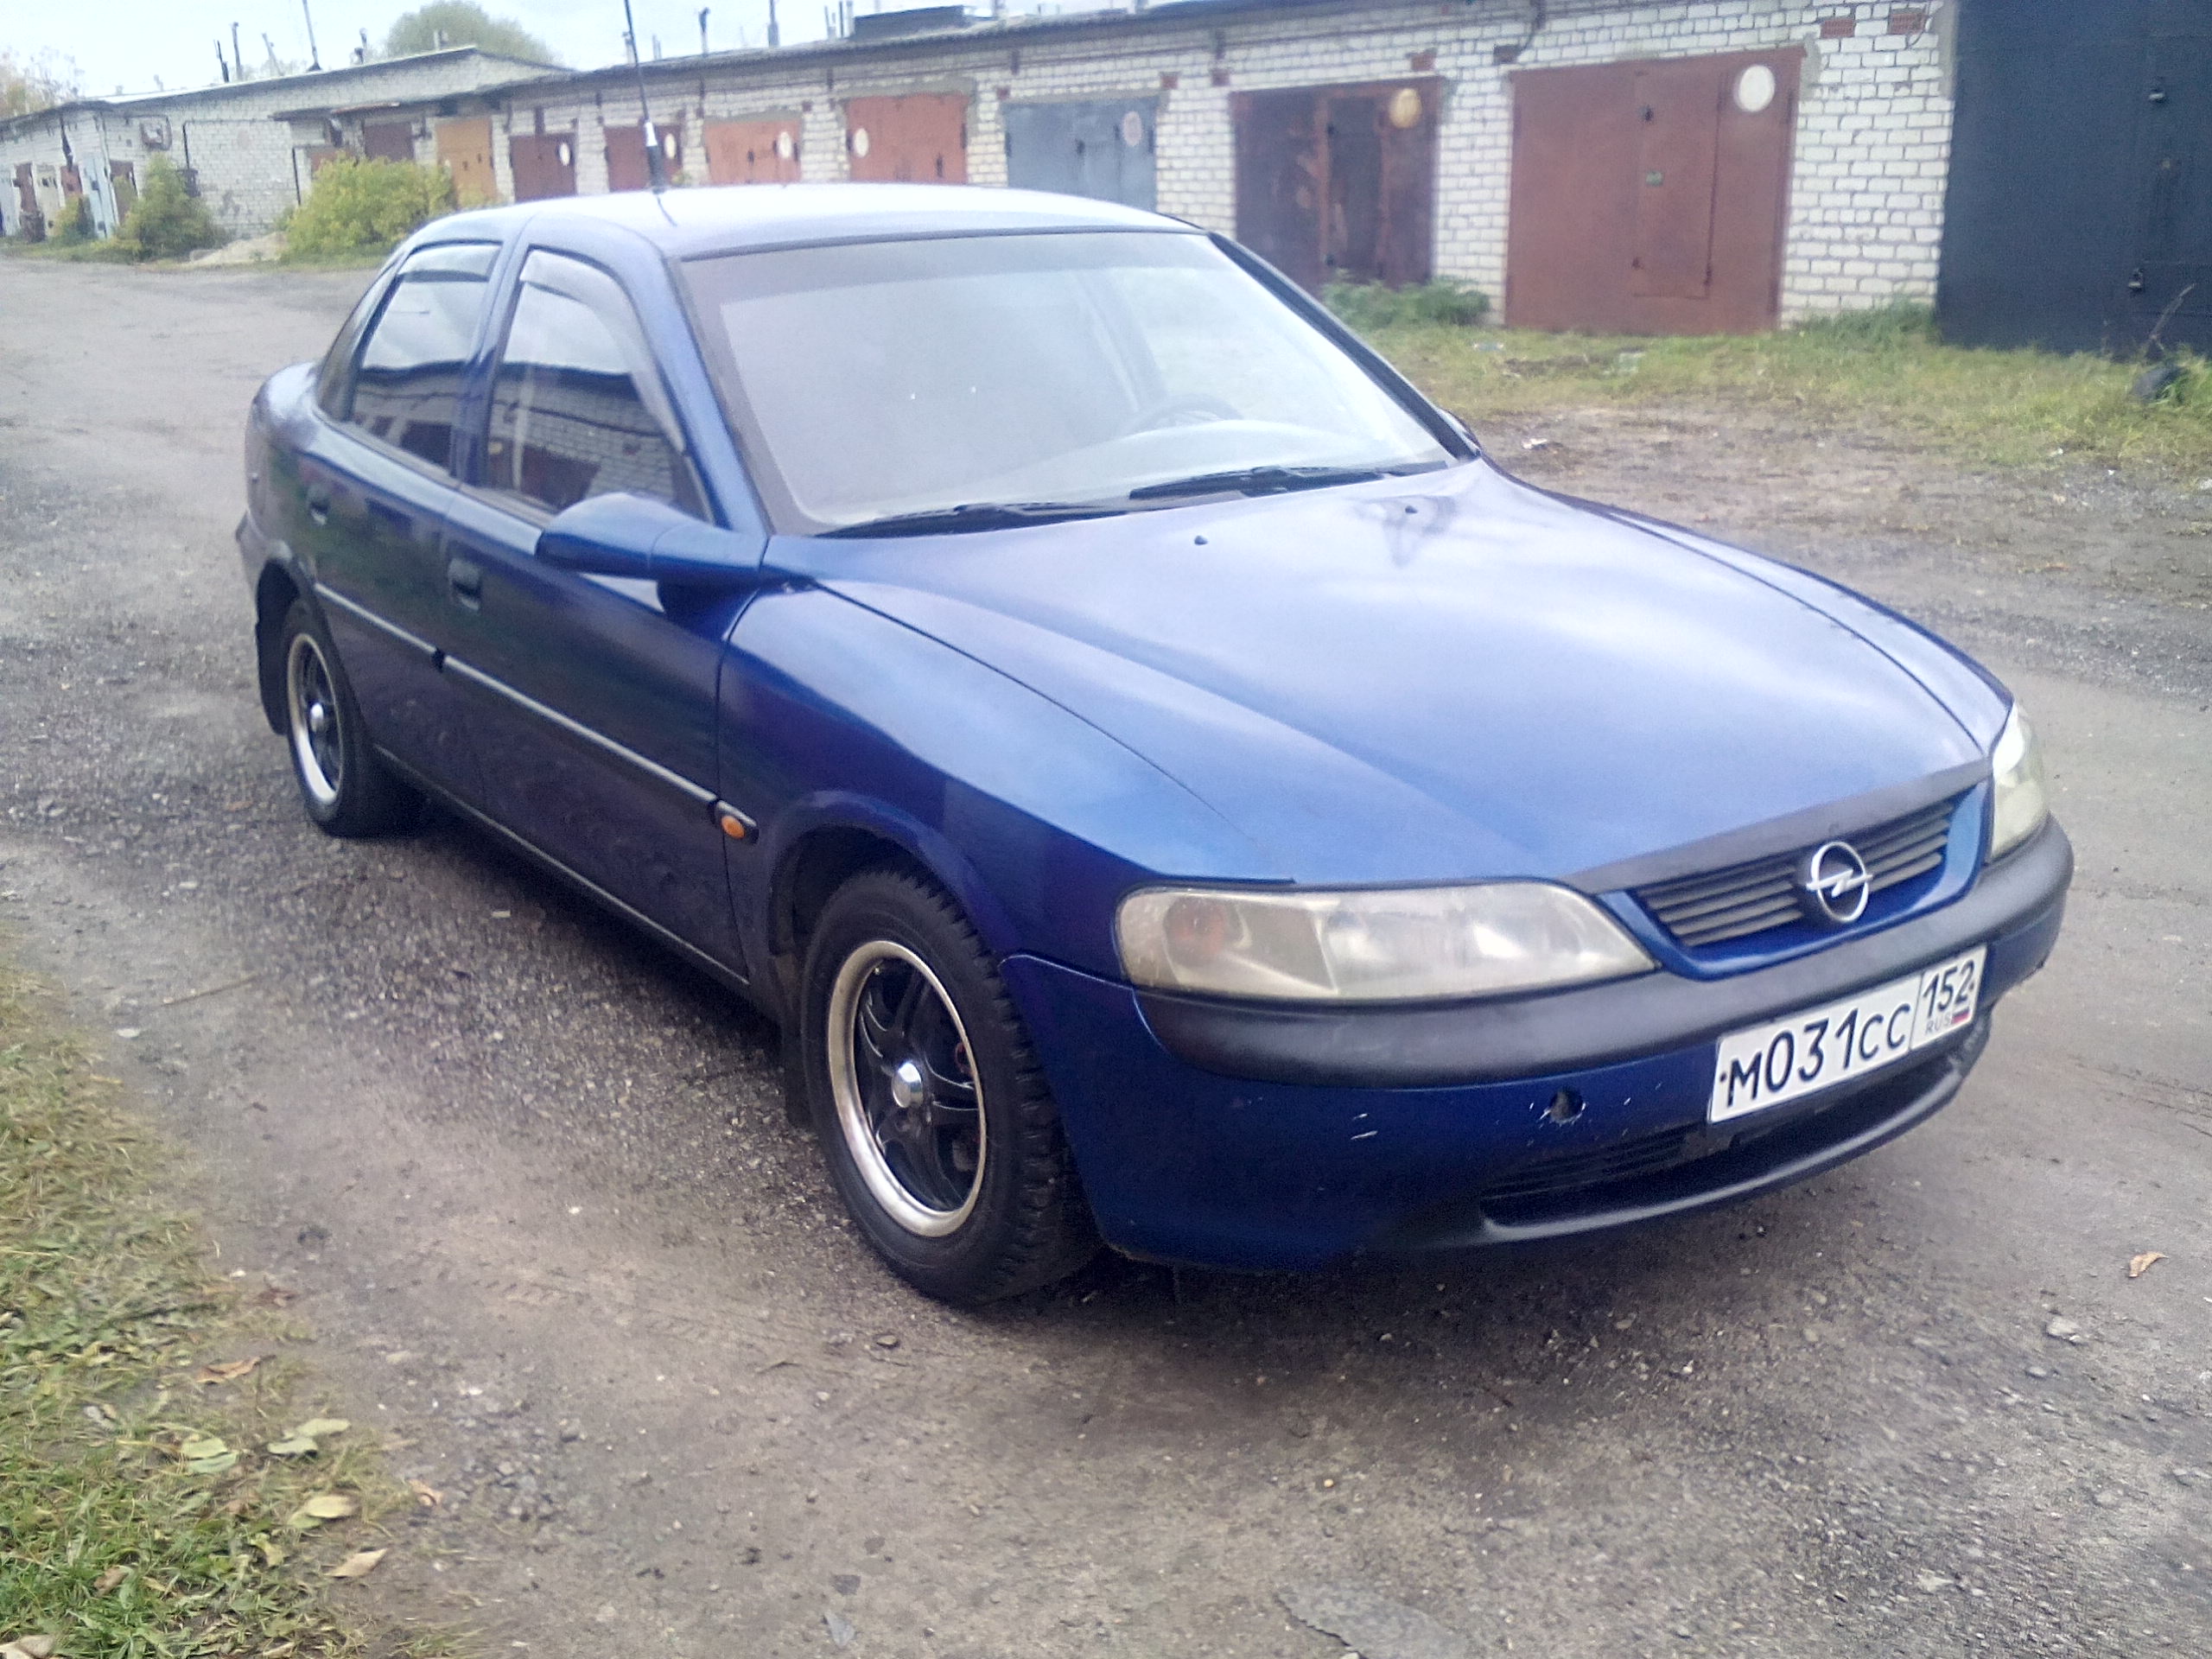 Иномарки до 350000. Опель седан 1997. Опель седан 1997 диско. Спортивный Opel седан 1997 год. Опель седан синий.